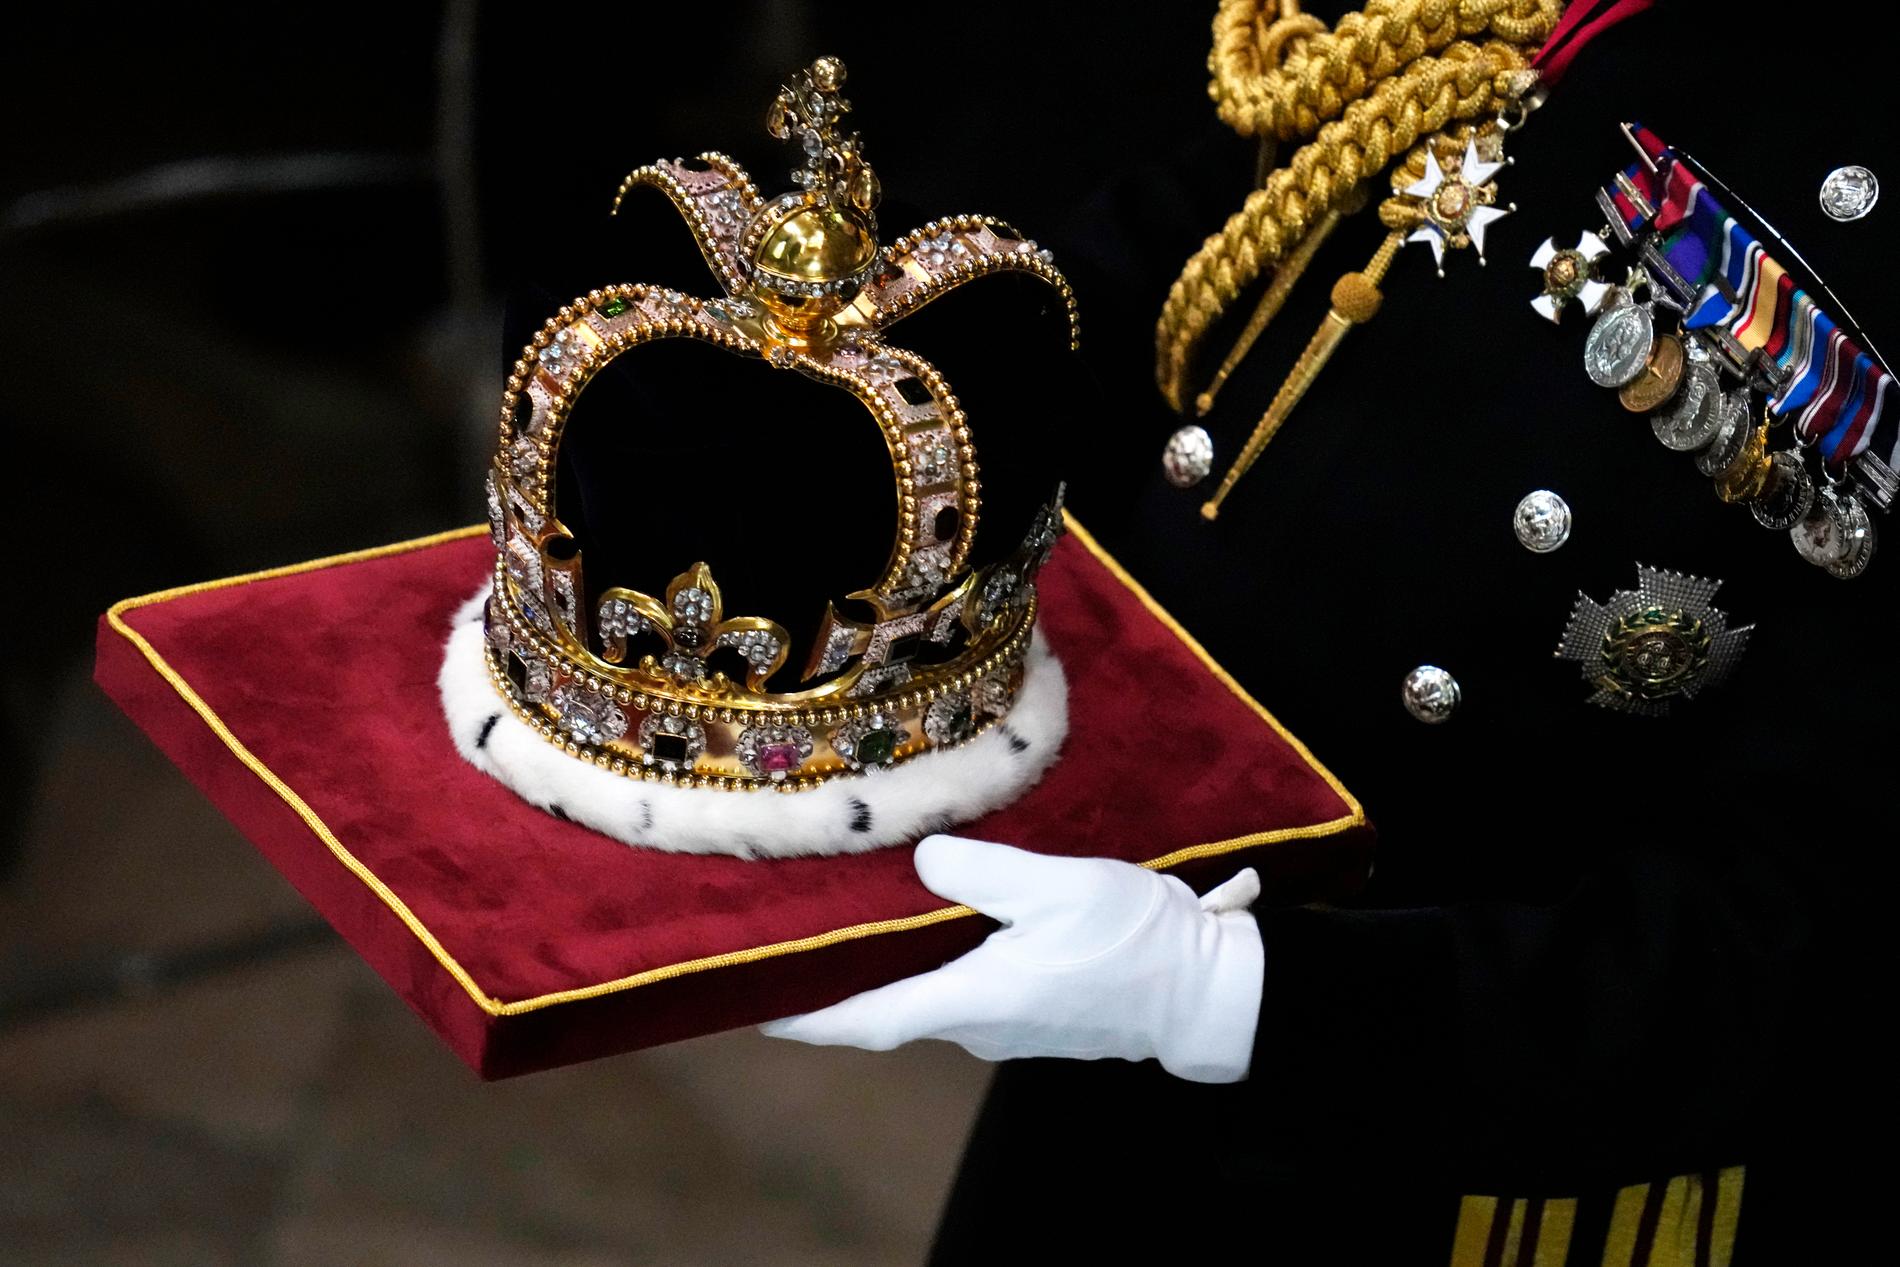 S:t Edvards krona, kröningskronan, är gjord i guld och väger 2,3 kilo. 